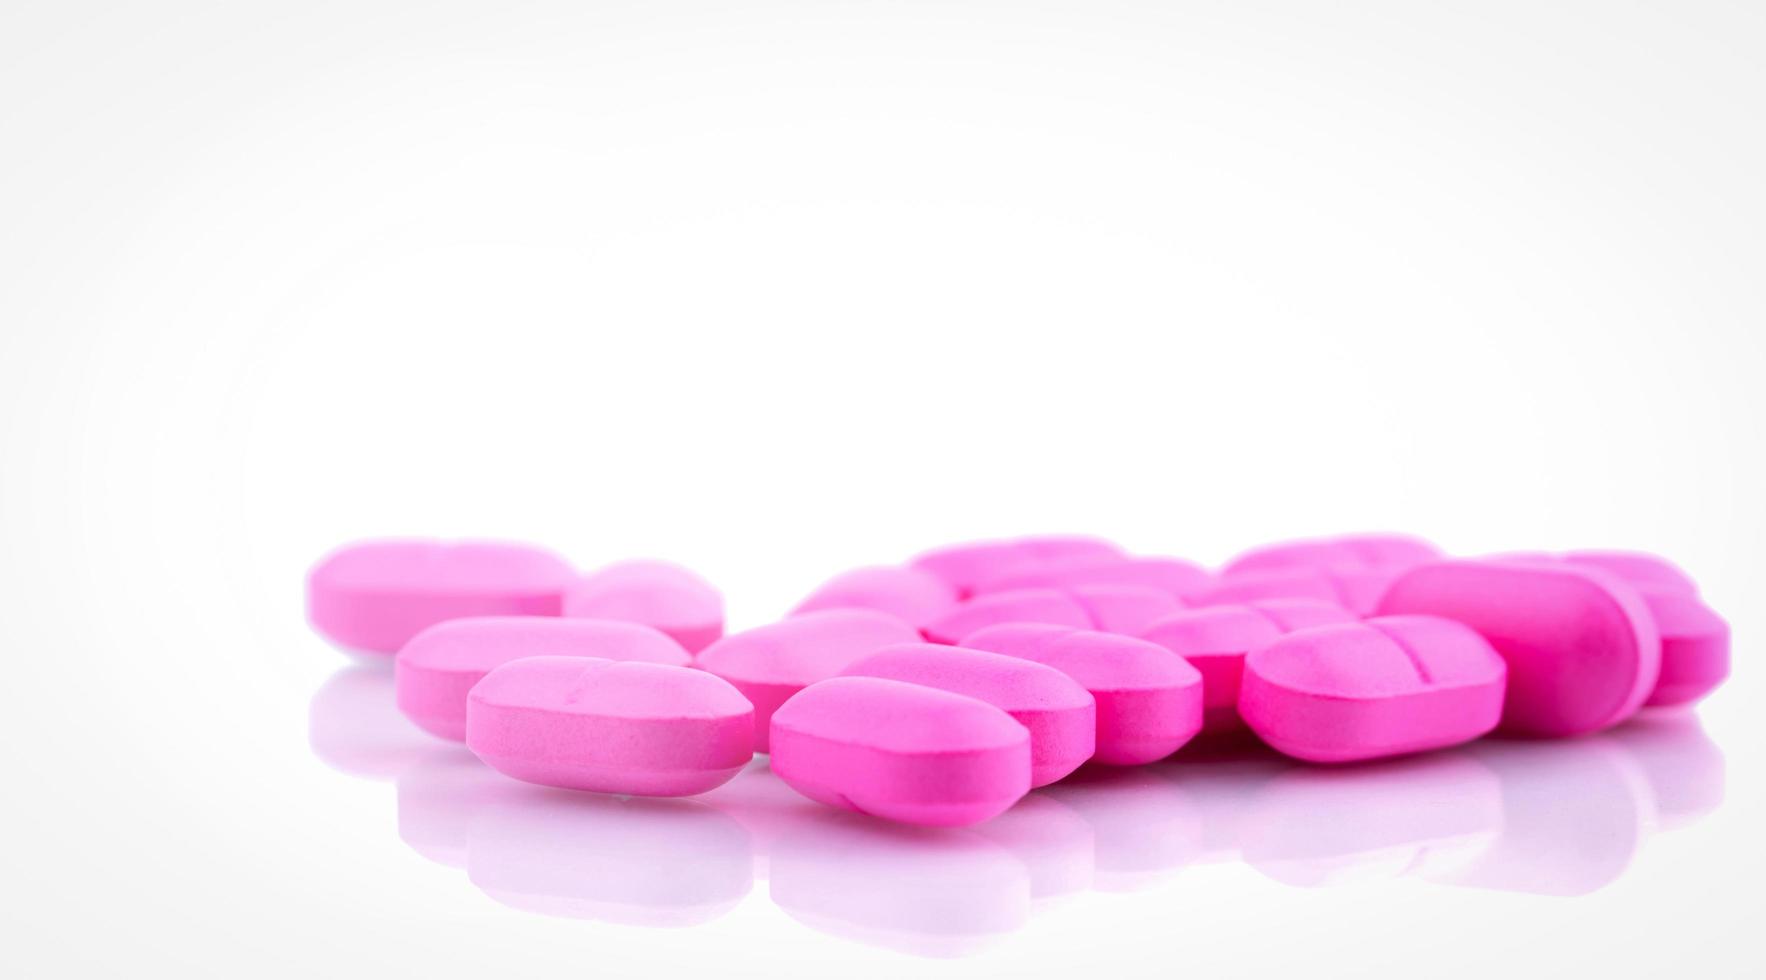 roze tabletten pillen op witte achtergrond. apotheek drogisterij achtergrond. farmaceutische industrie. roze tabletten voor behandeling liefdesprobleem. drugsgebruik in het ziekenhuis. gezondheidsbudget concept. gezondheidszorg concept foto